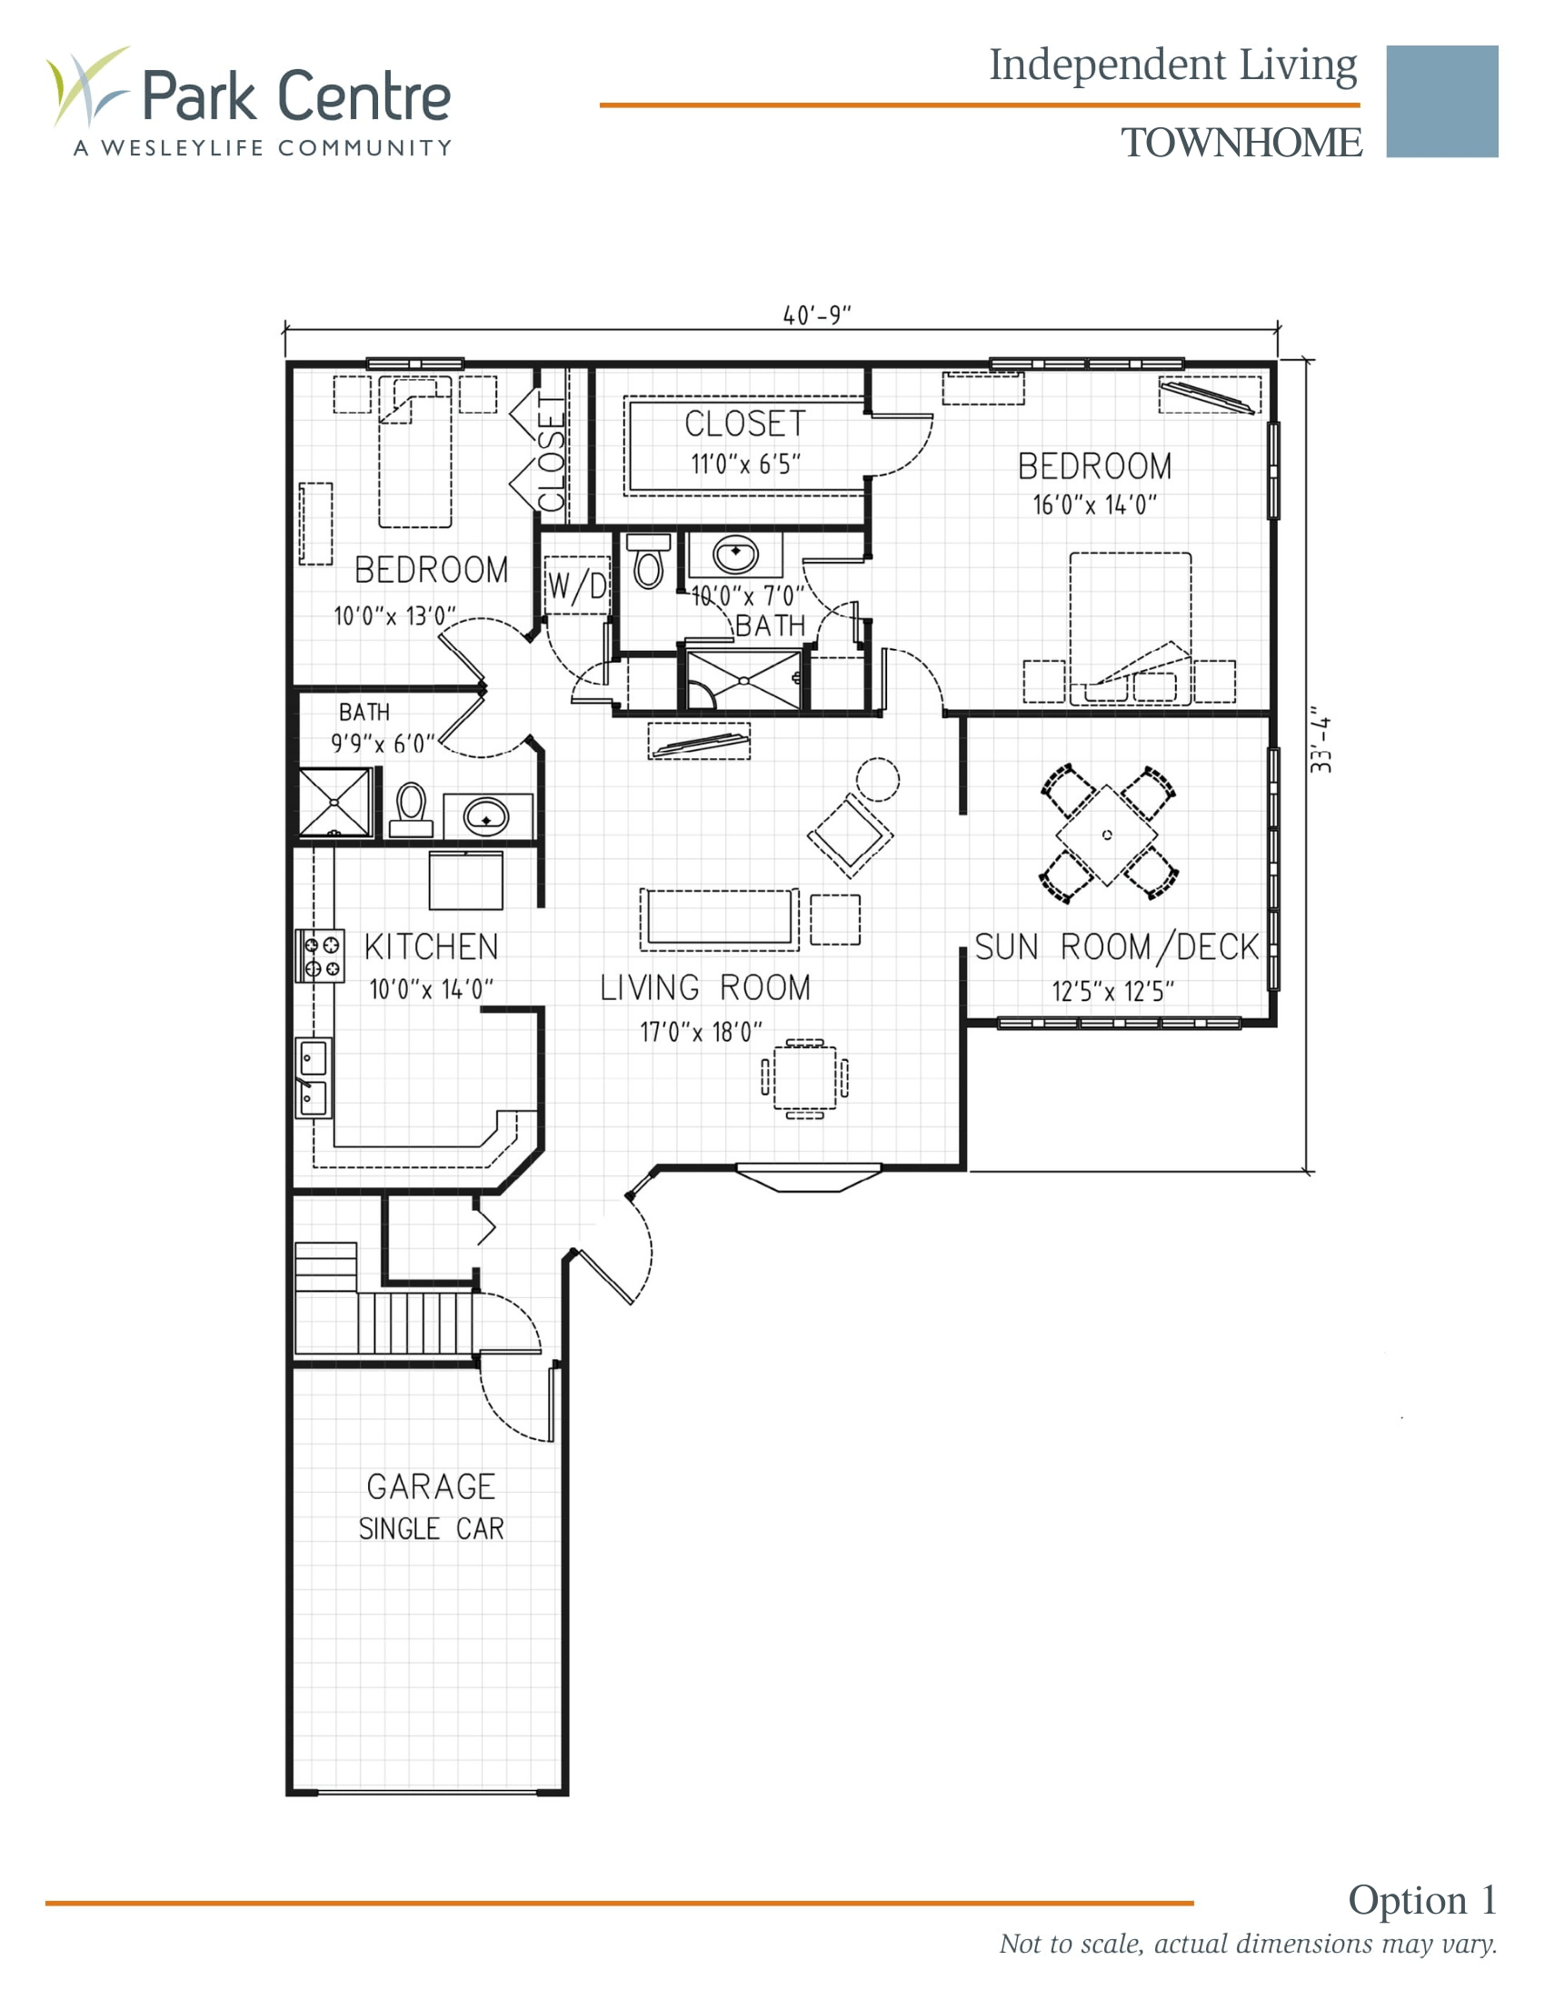 Townhome floor plans